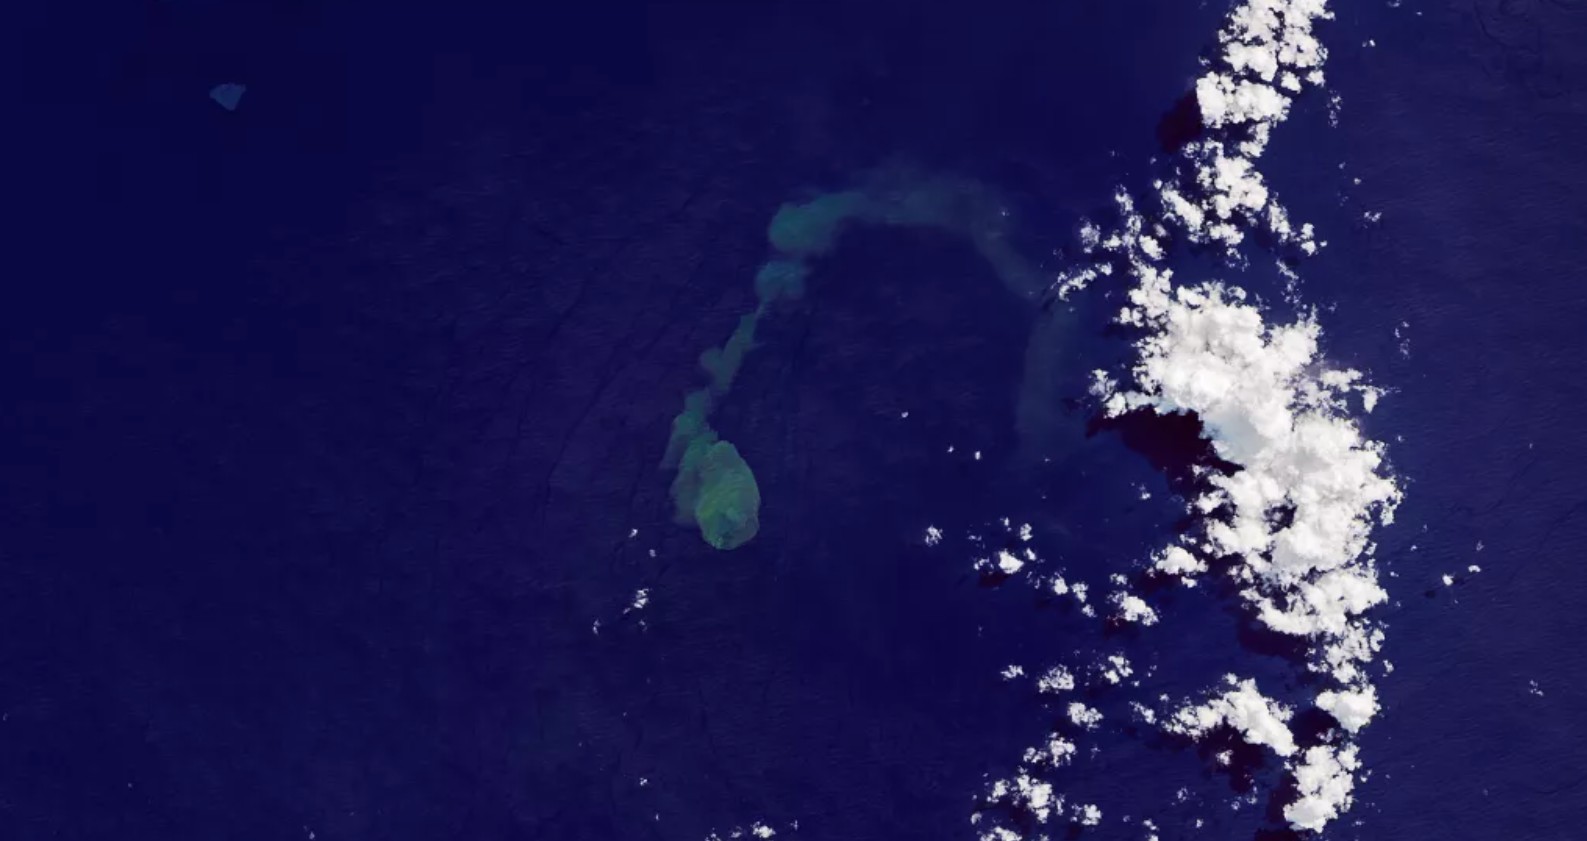 Famoso lar de tubarões, vulcão submarino entra em erupção (Foto: Divulgação/ NASA)